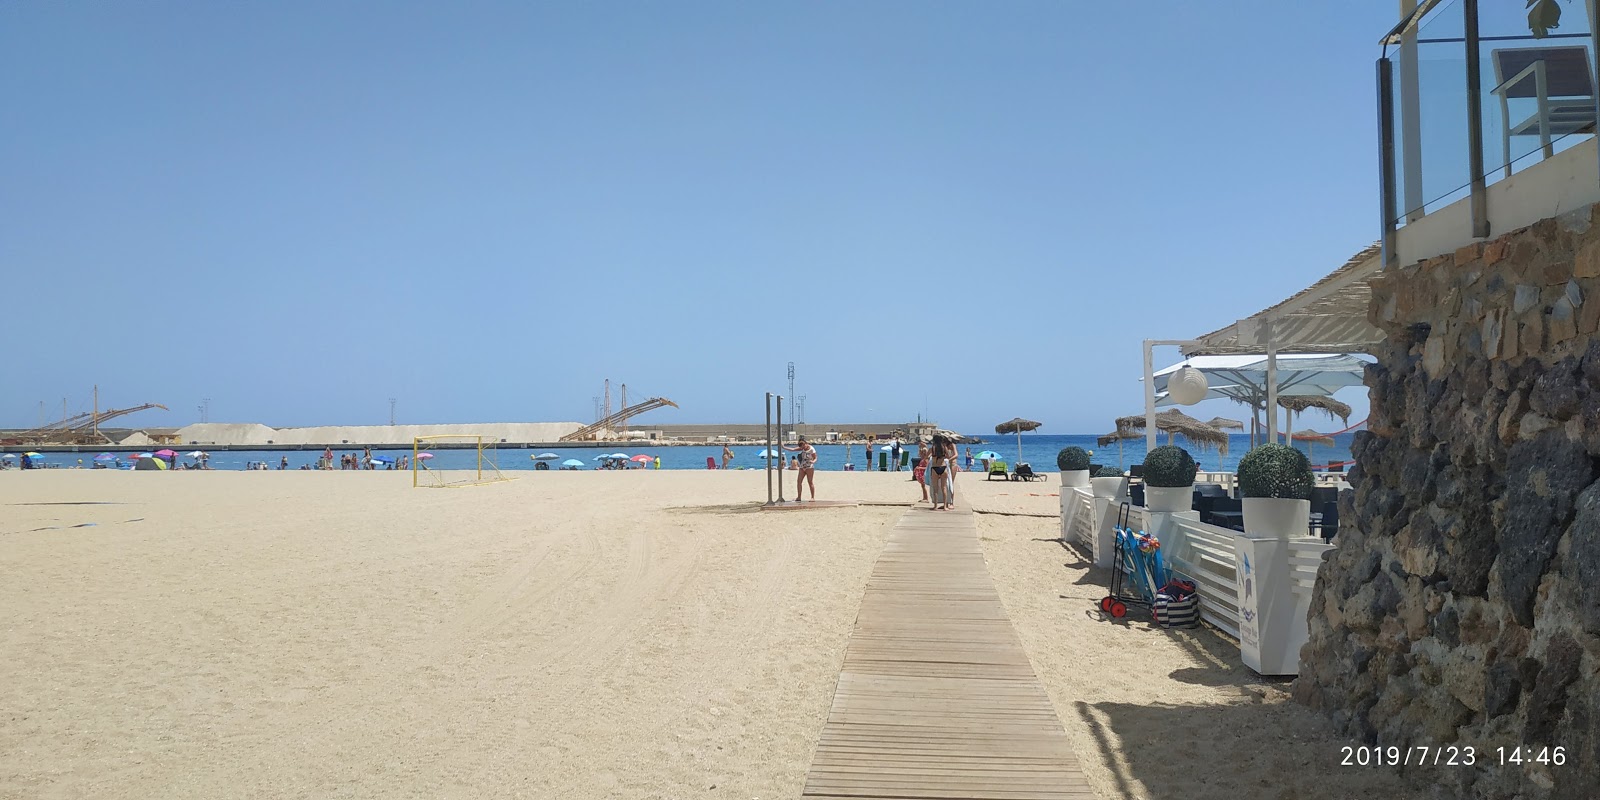 Foto af Playa de Garrucha - populært sted blandt afslapningskendere